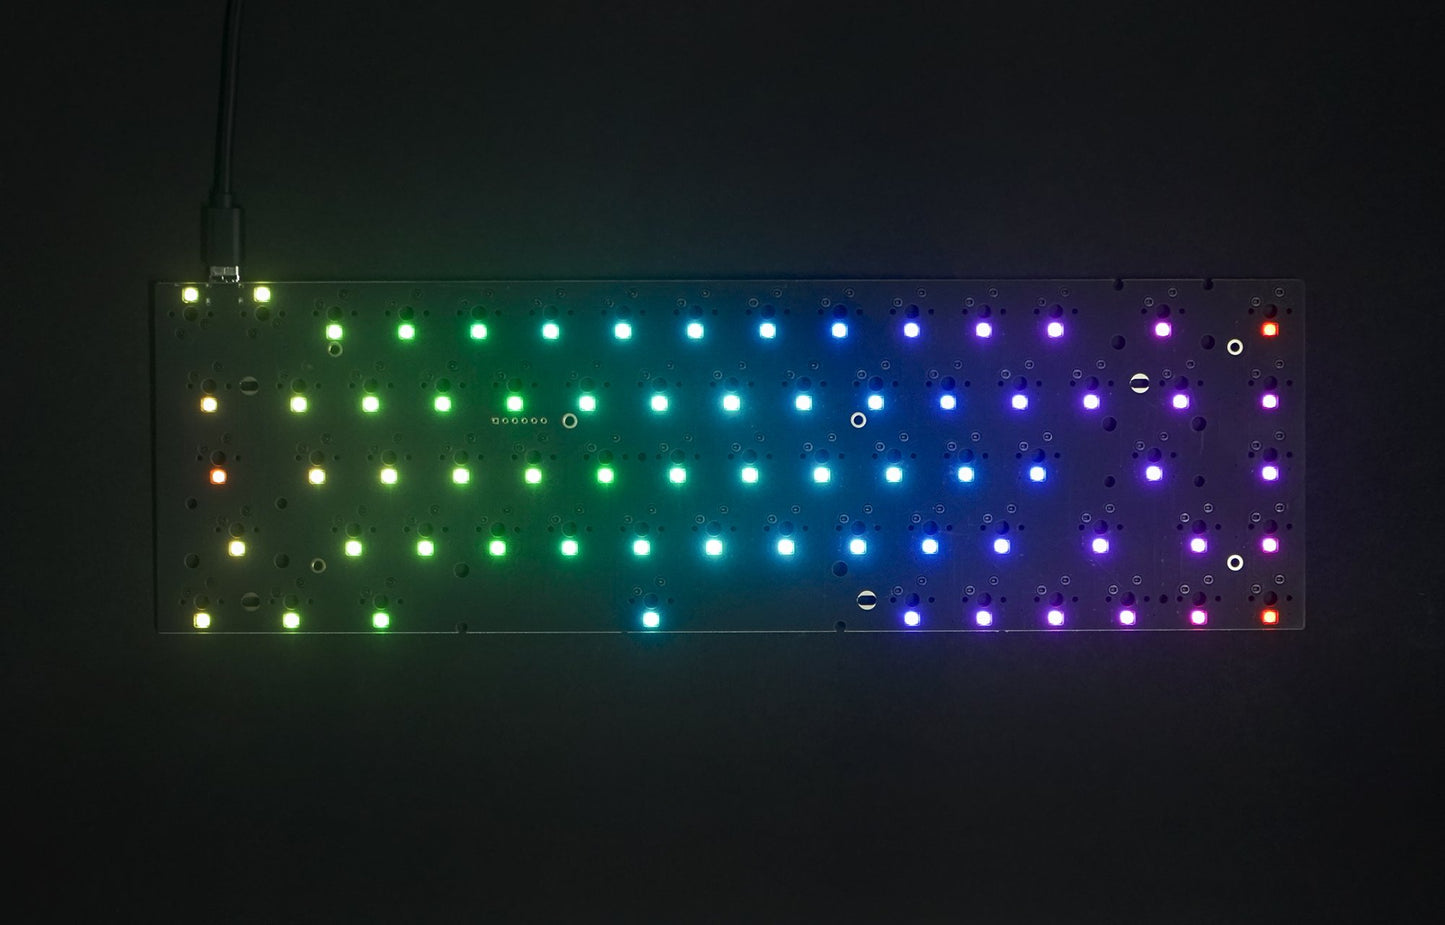 KBDFANS Tofu 65% Keyboard RGB HOT SWAPPABLE DIY KIT